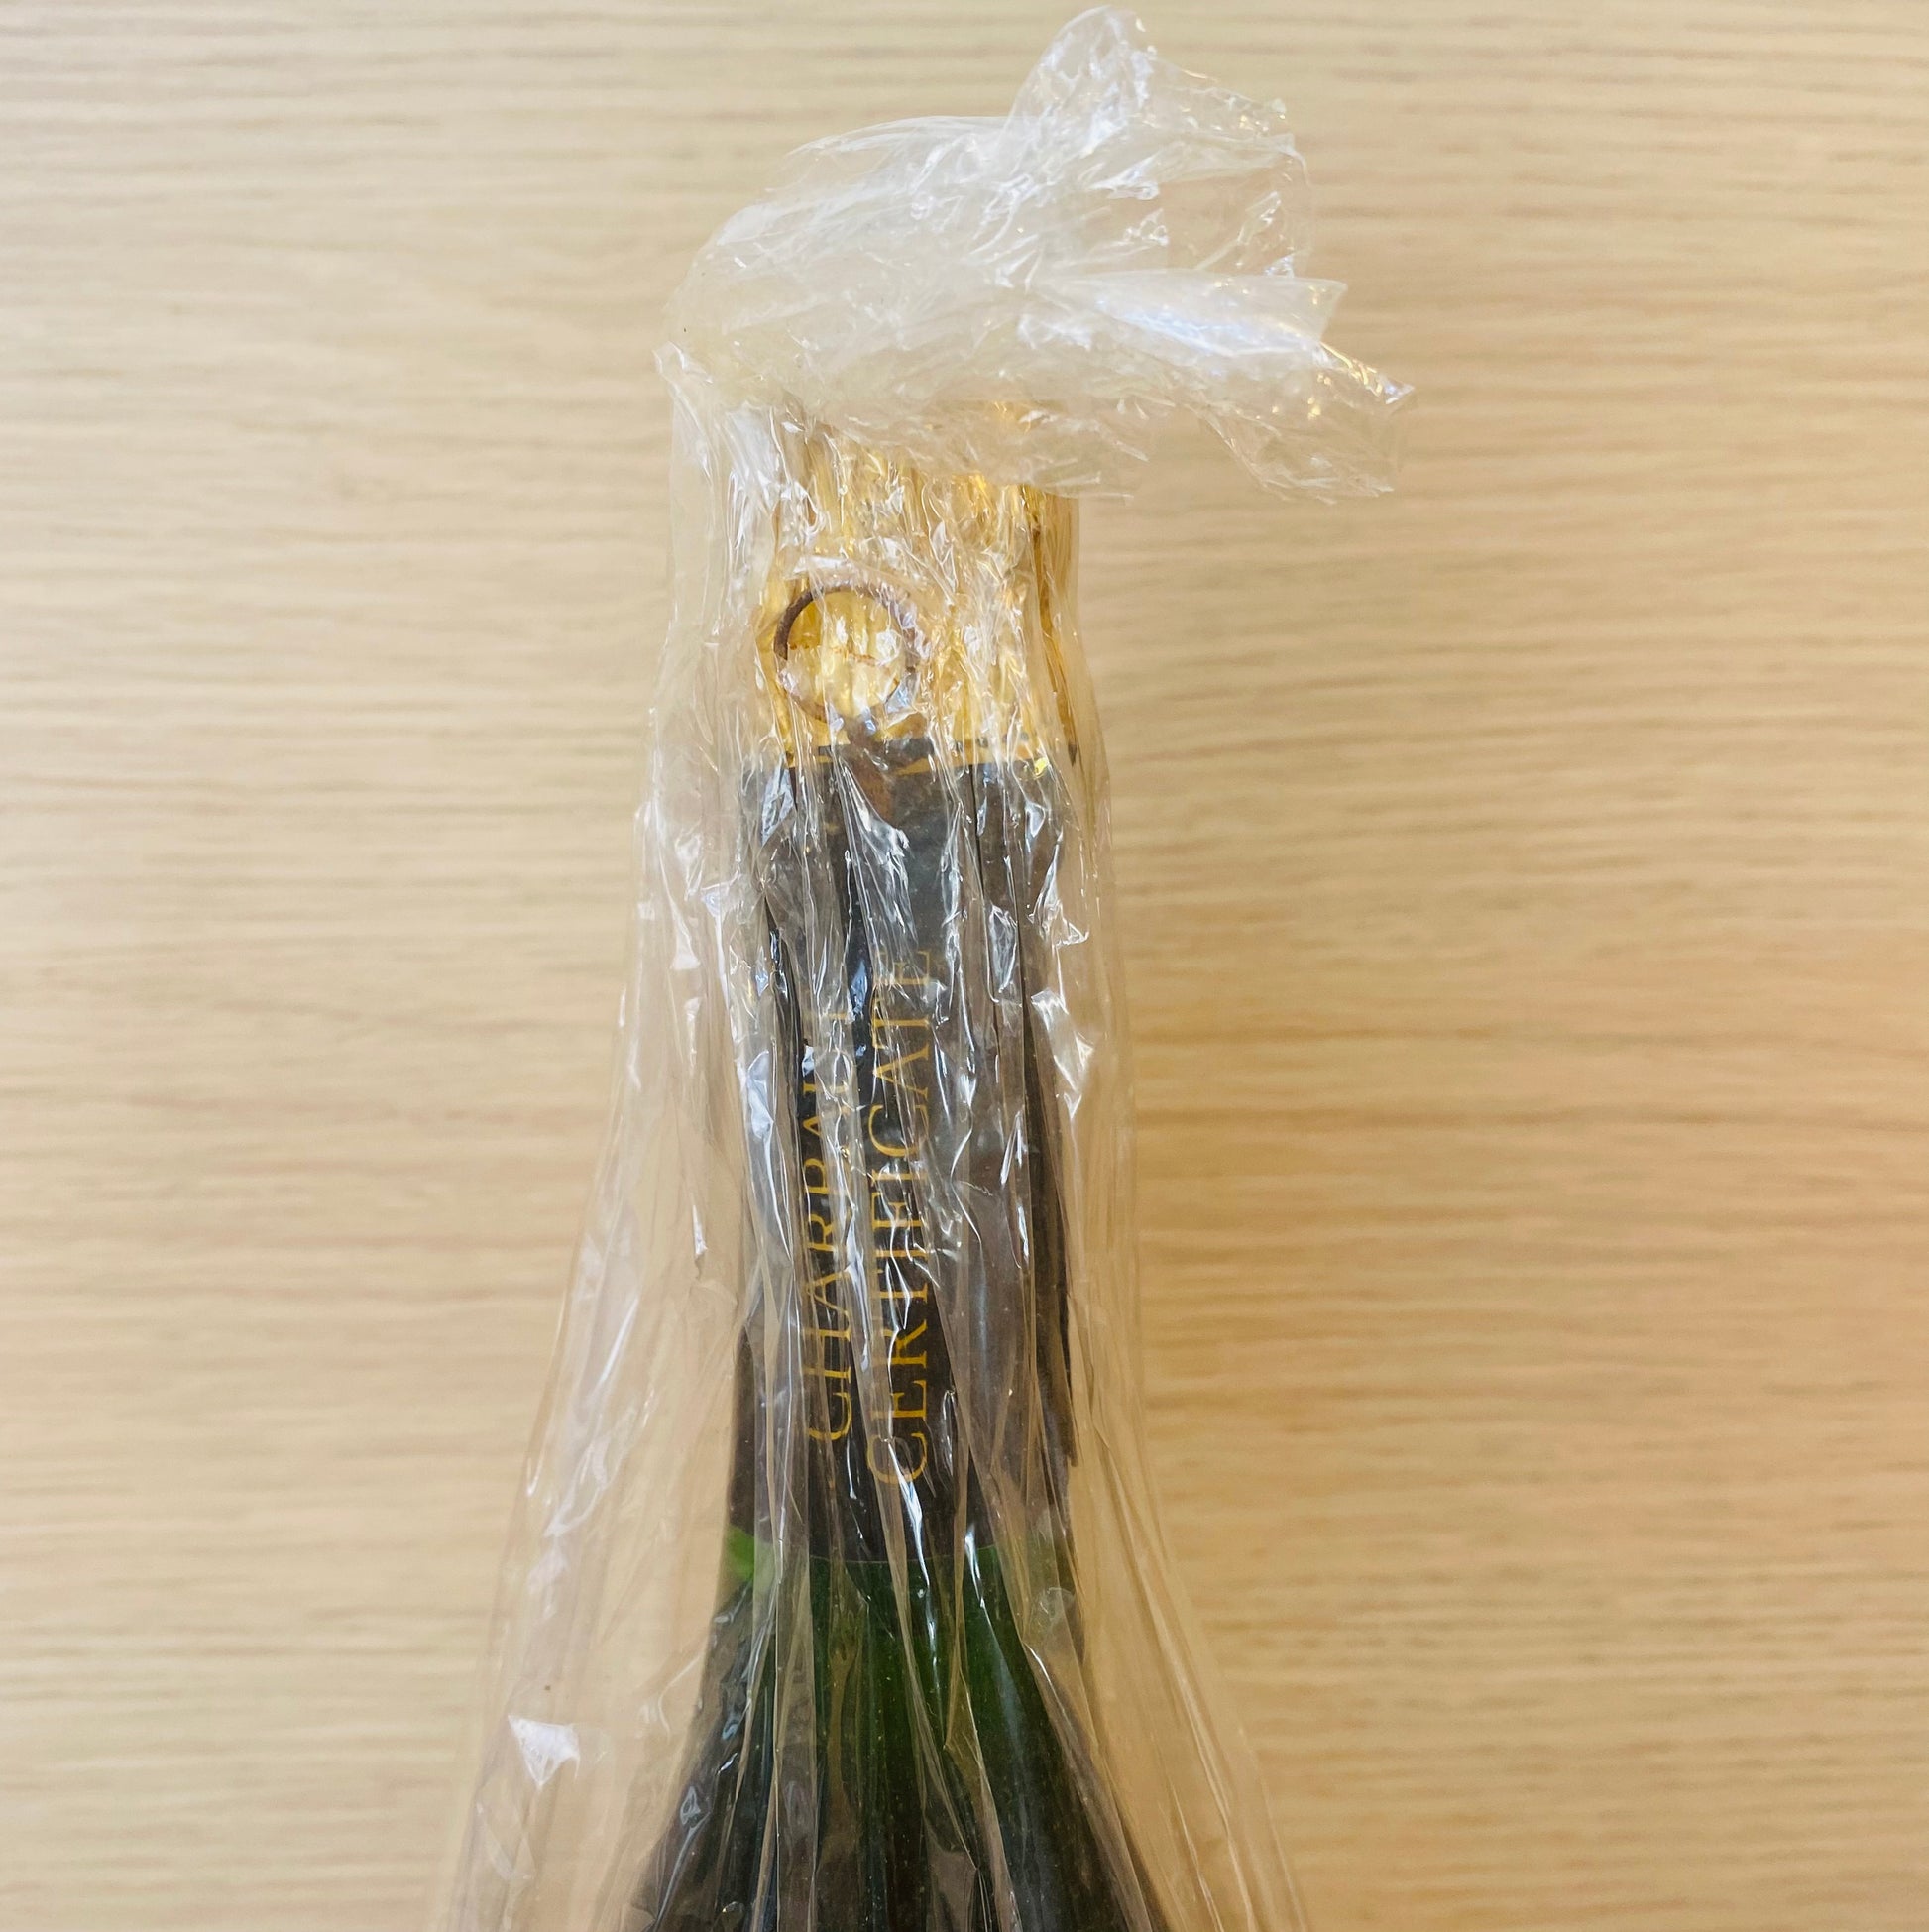 Champagne Charbaut 1976 Blanc de blancs - Les Choses Particulières